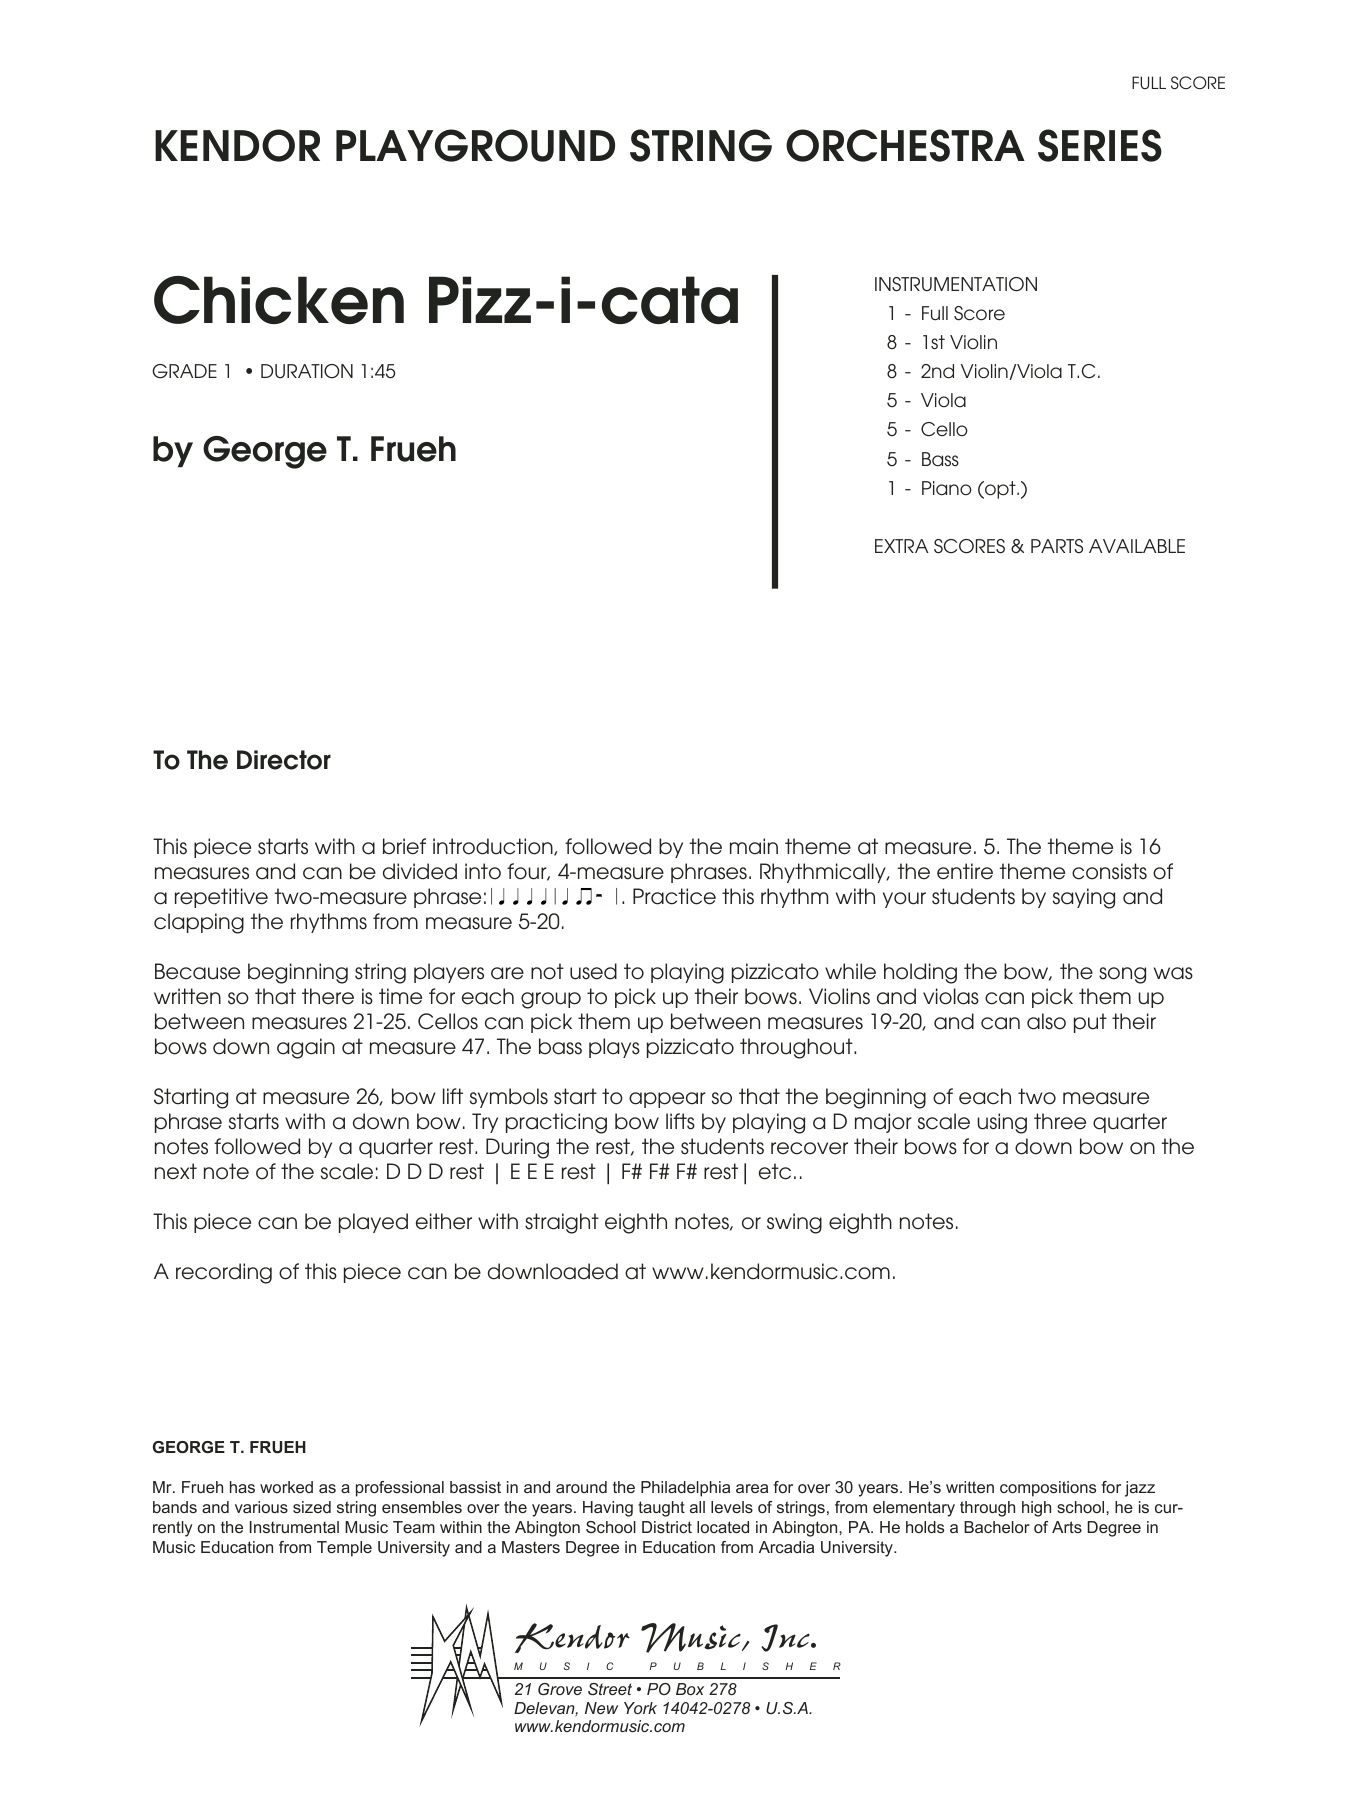 Chicken Pizz-i-cata - Full Score (Orchestra) von George T. Frueh